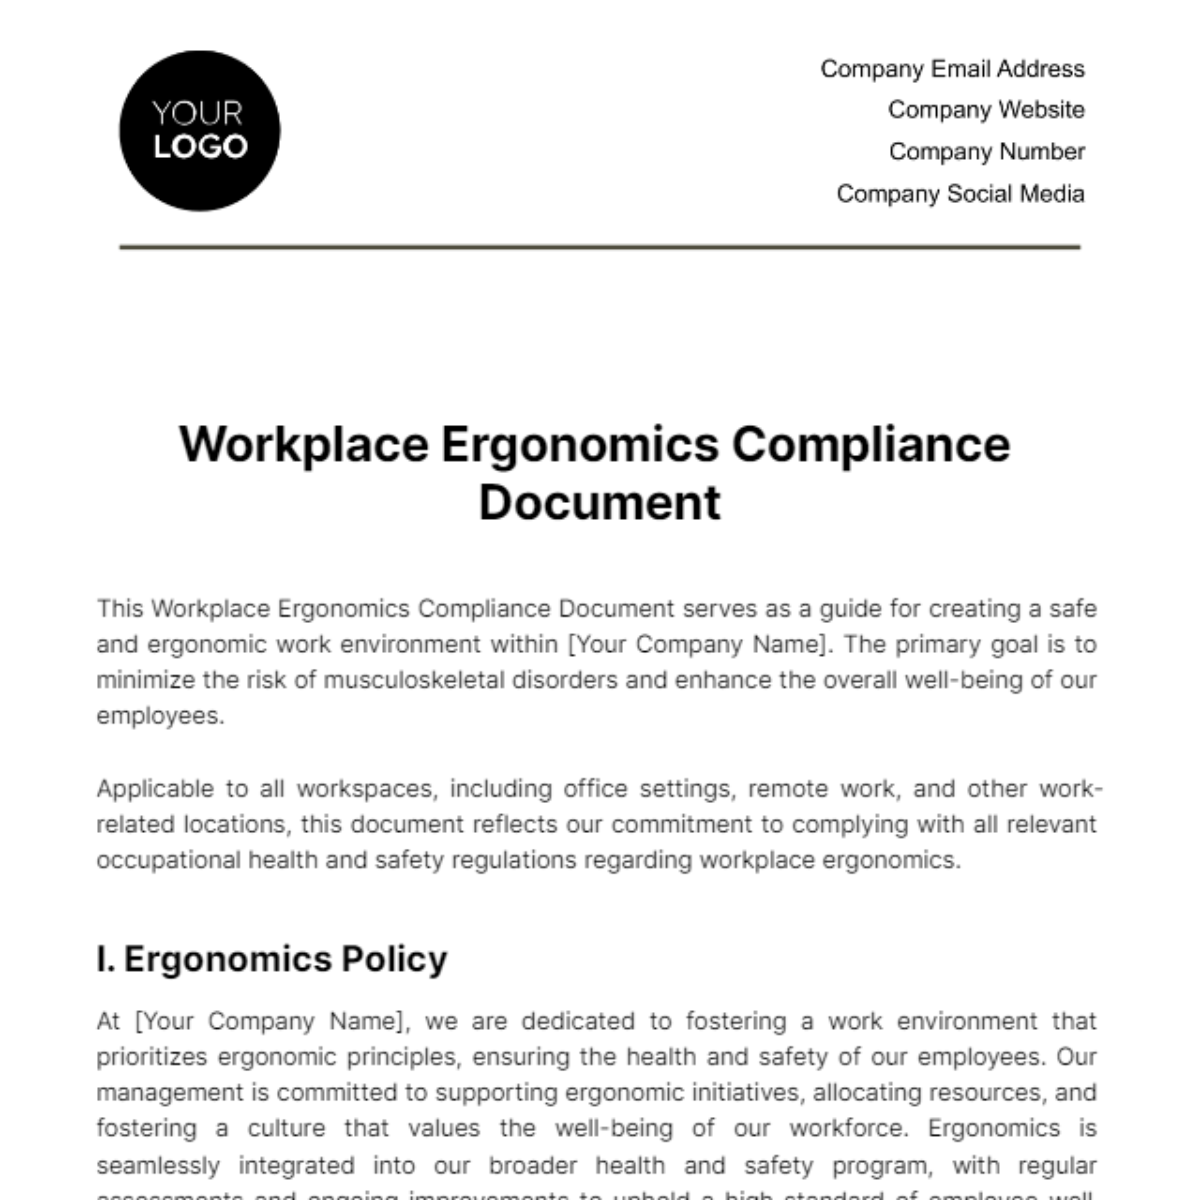 Workplace Ergonomics Compliance Document Template